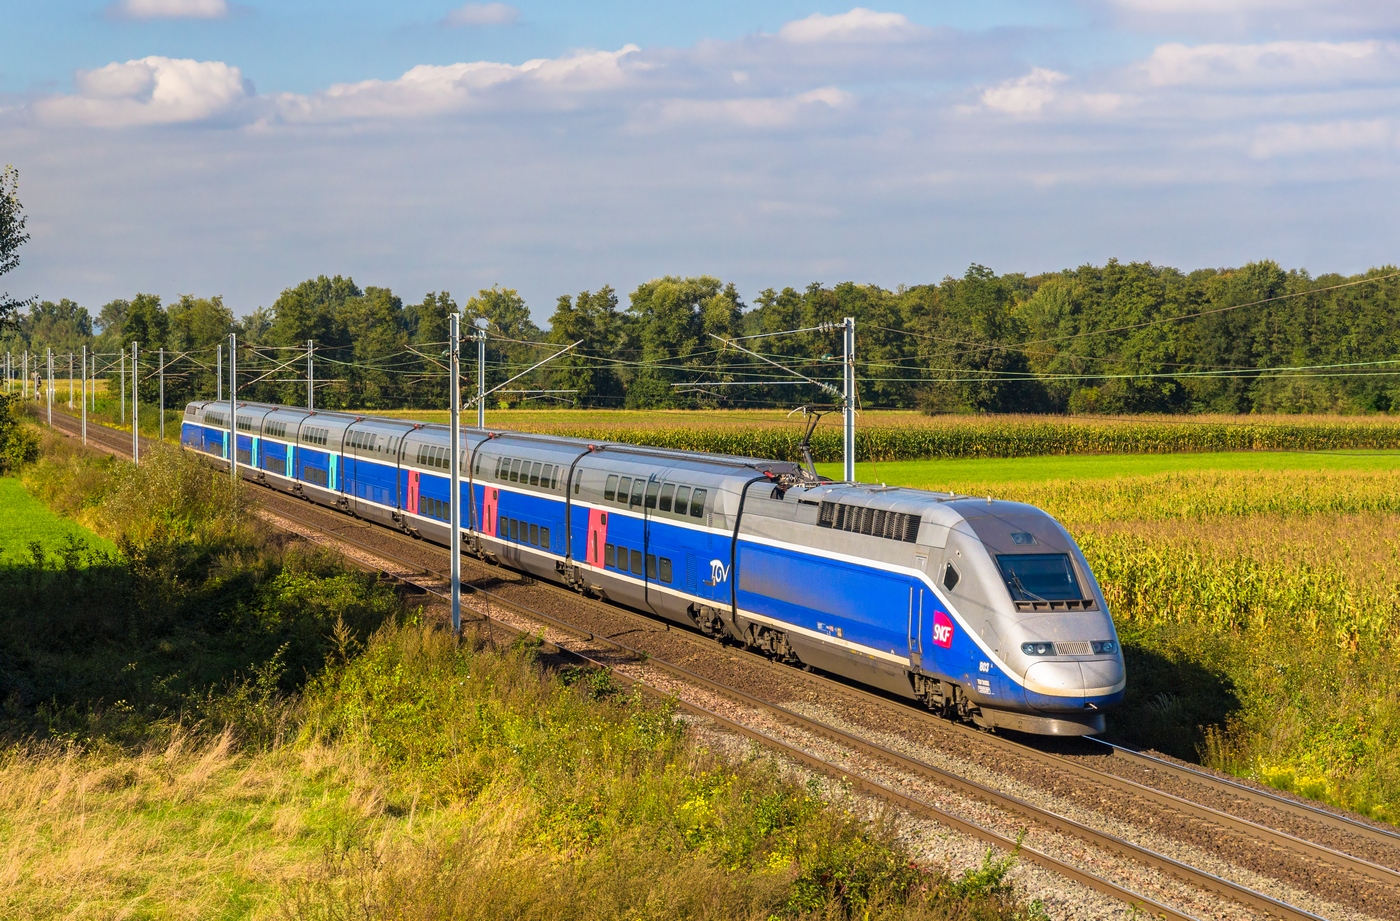 La ligne TGV Paris-Lyon est la première à bénéficier d’une couverture 4G totale déployée par l’opérateur Orange. © Leonid Andronov, Shutterstock.com